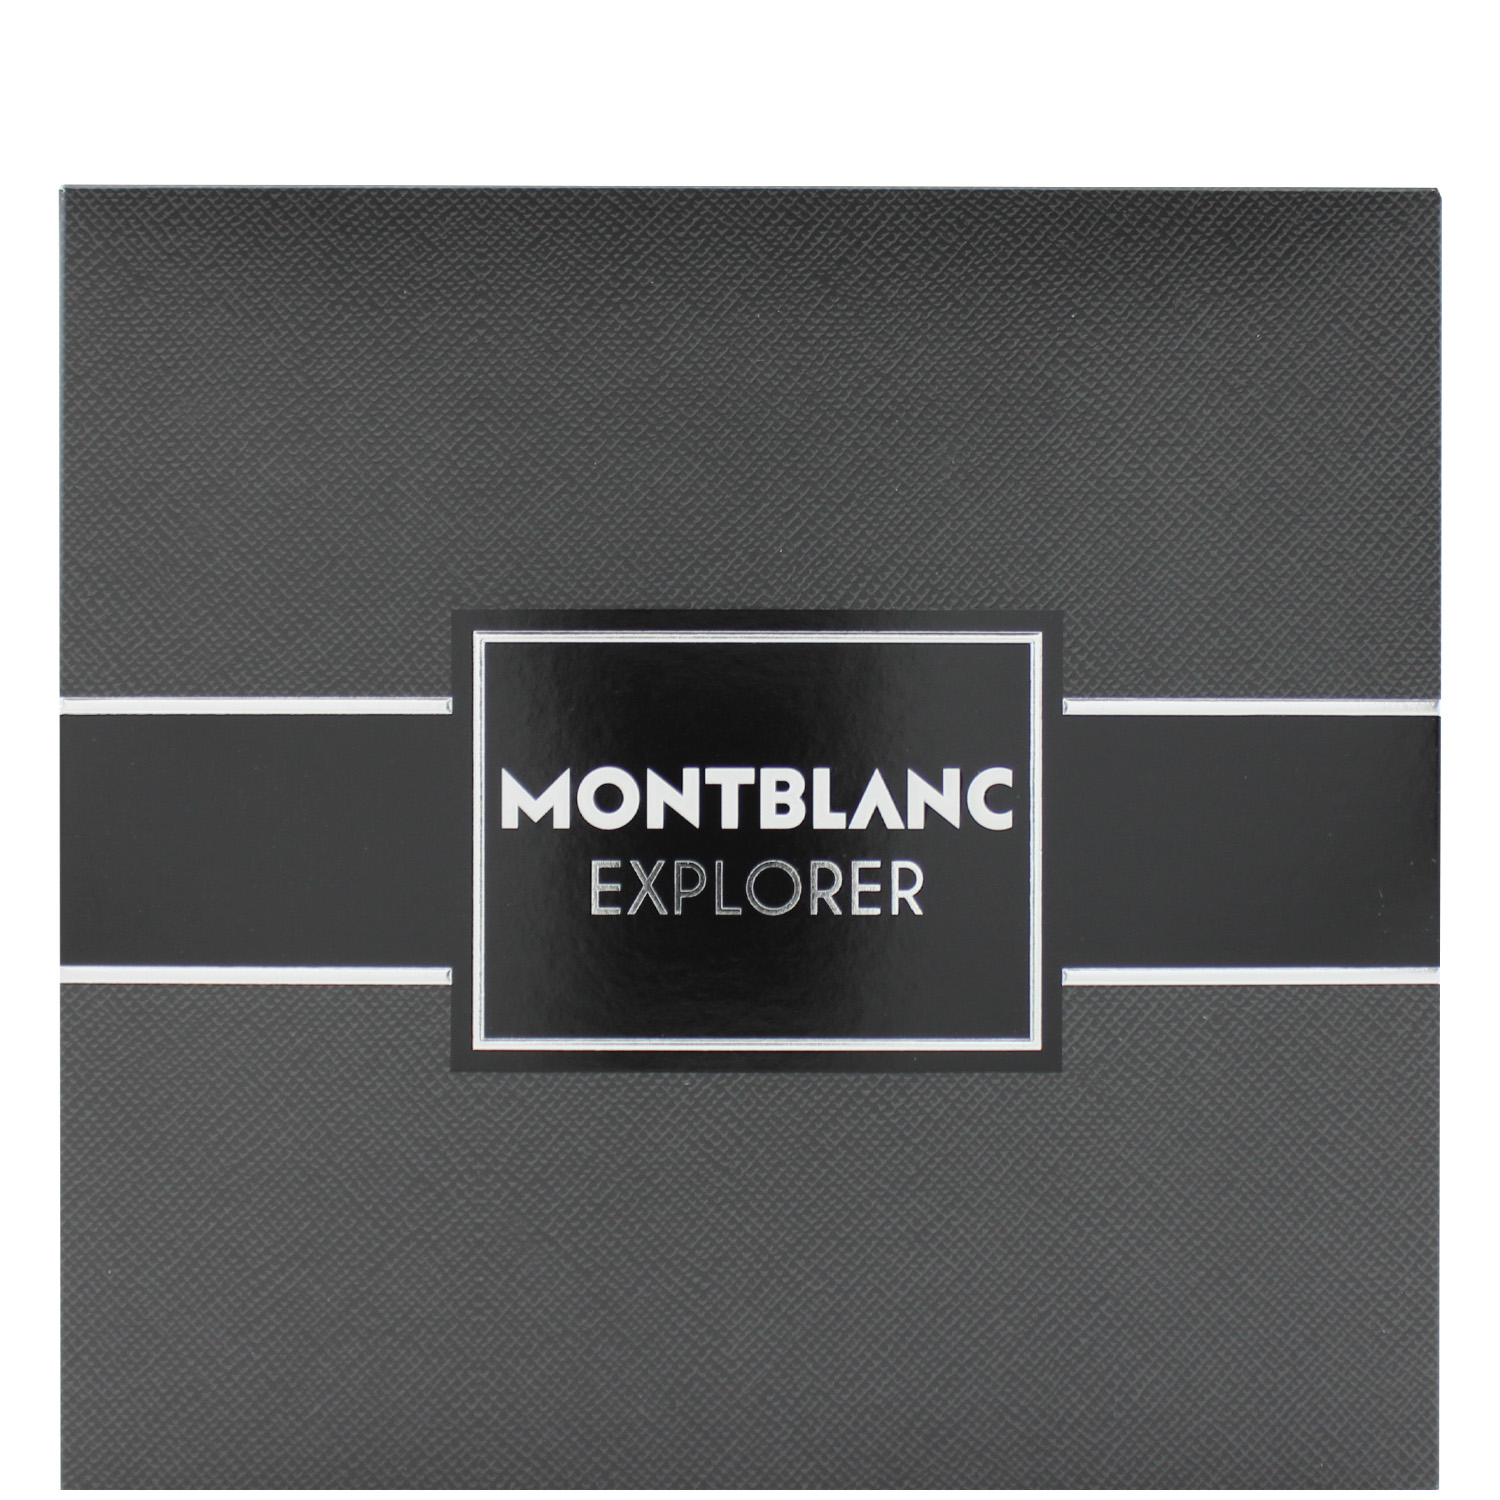 Montblanc Explorer Set Eau de Parfum 60ml & Shower Gel 100ml